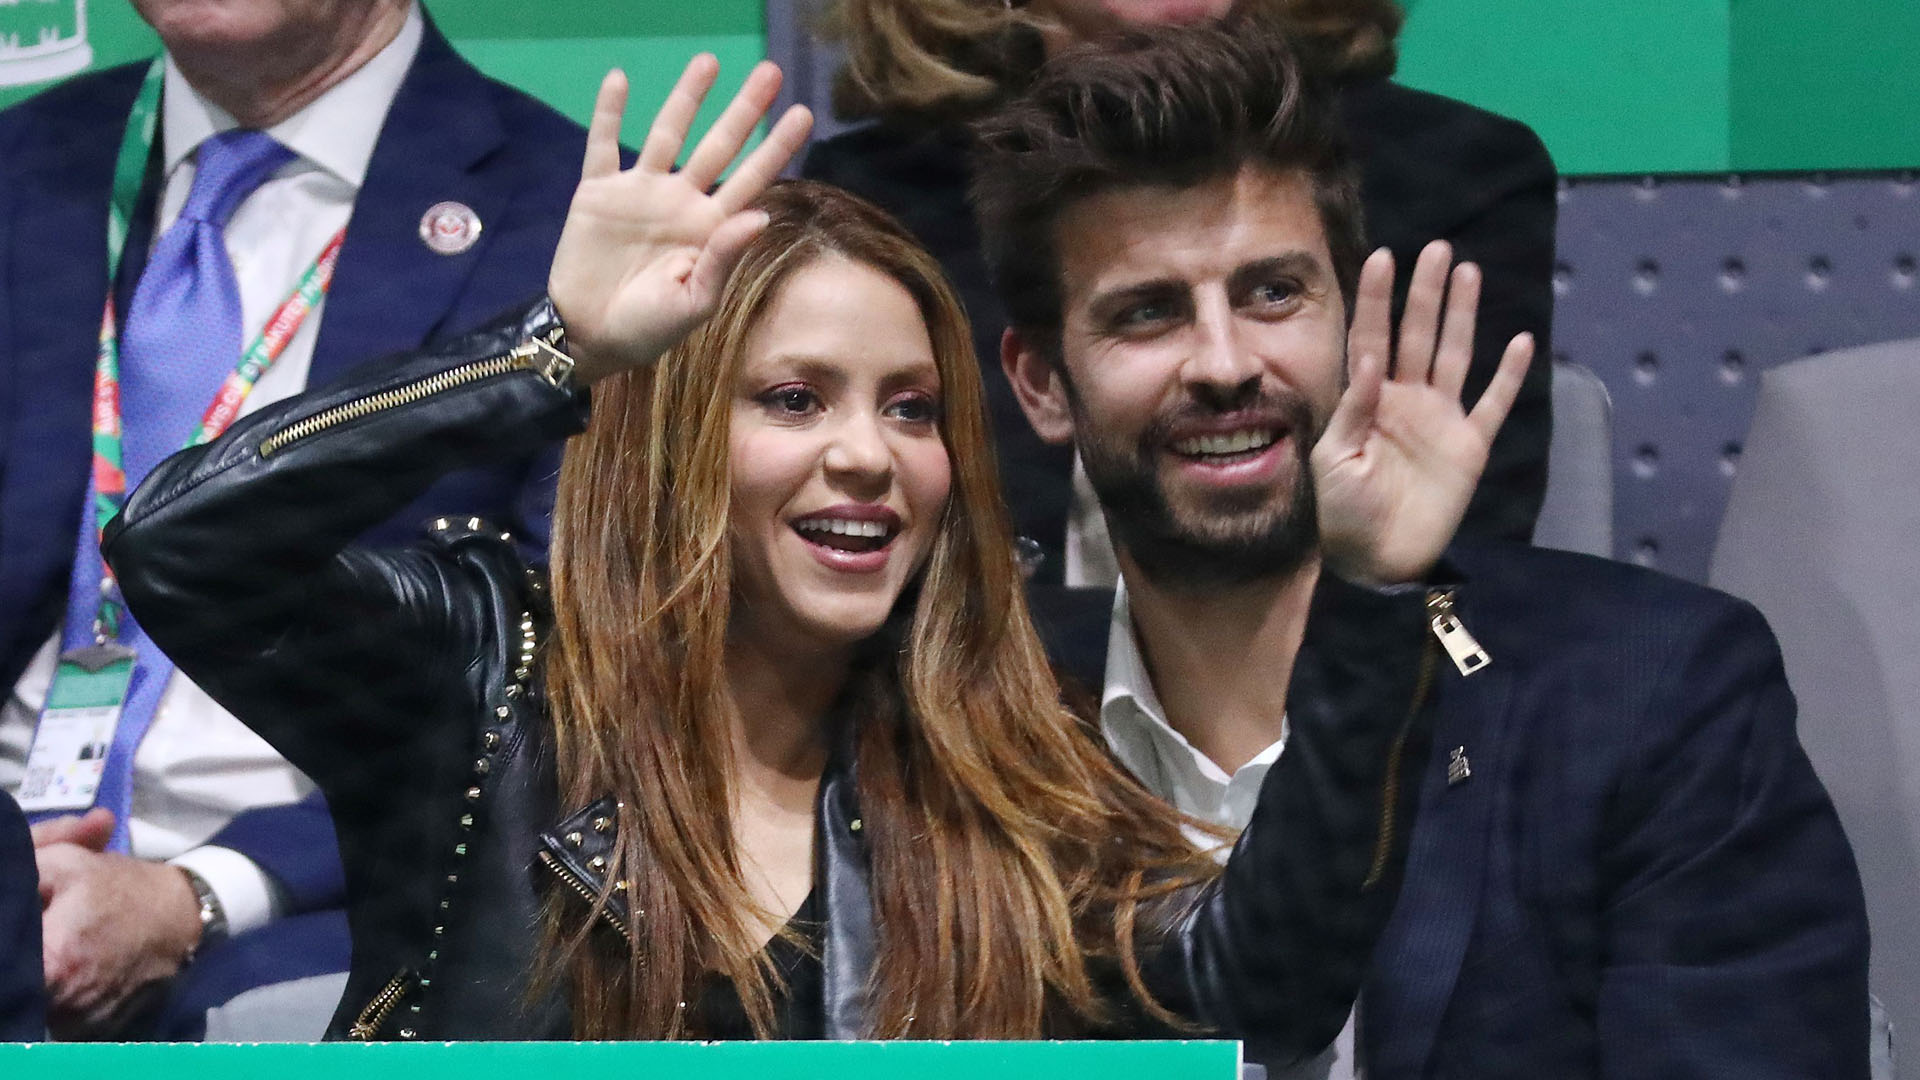 El motivo oculto que aceleró la separación de Piqué y Shakira más allá de las supuestas infidelidades